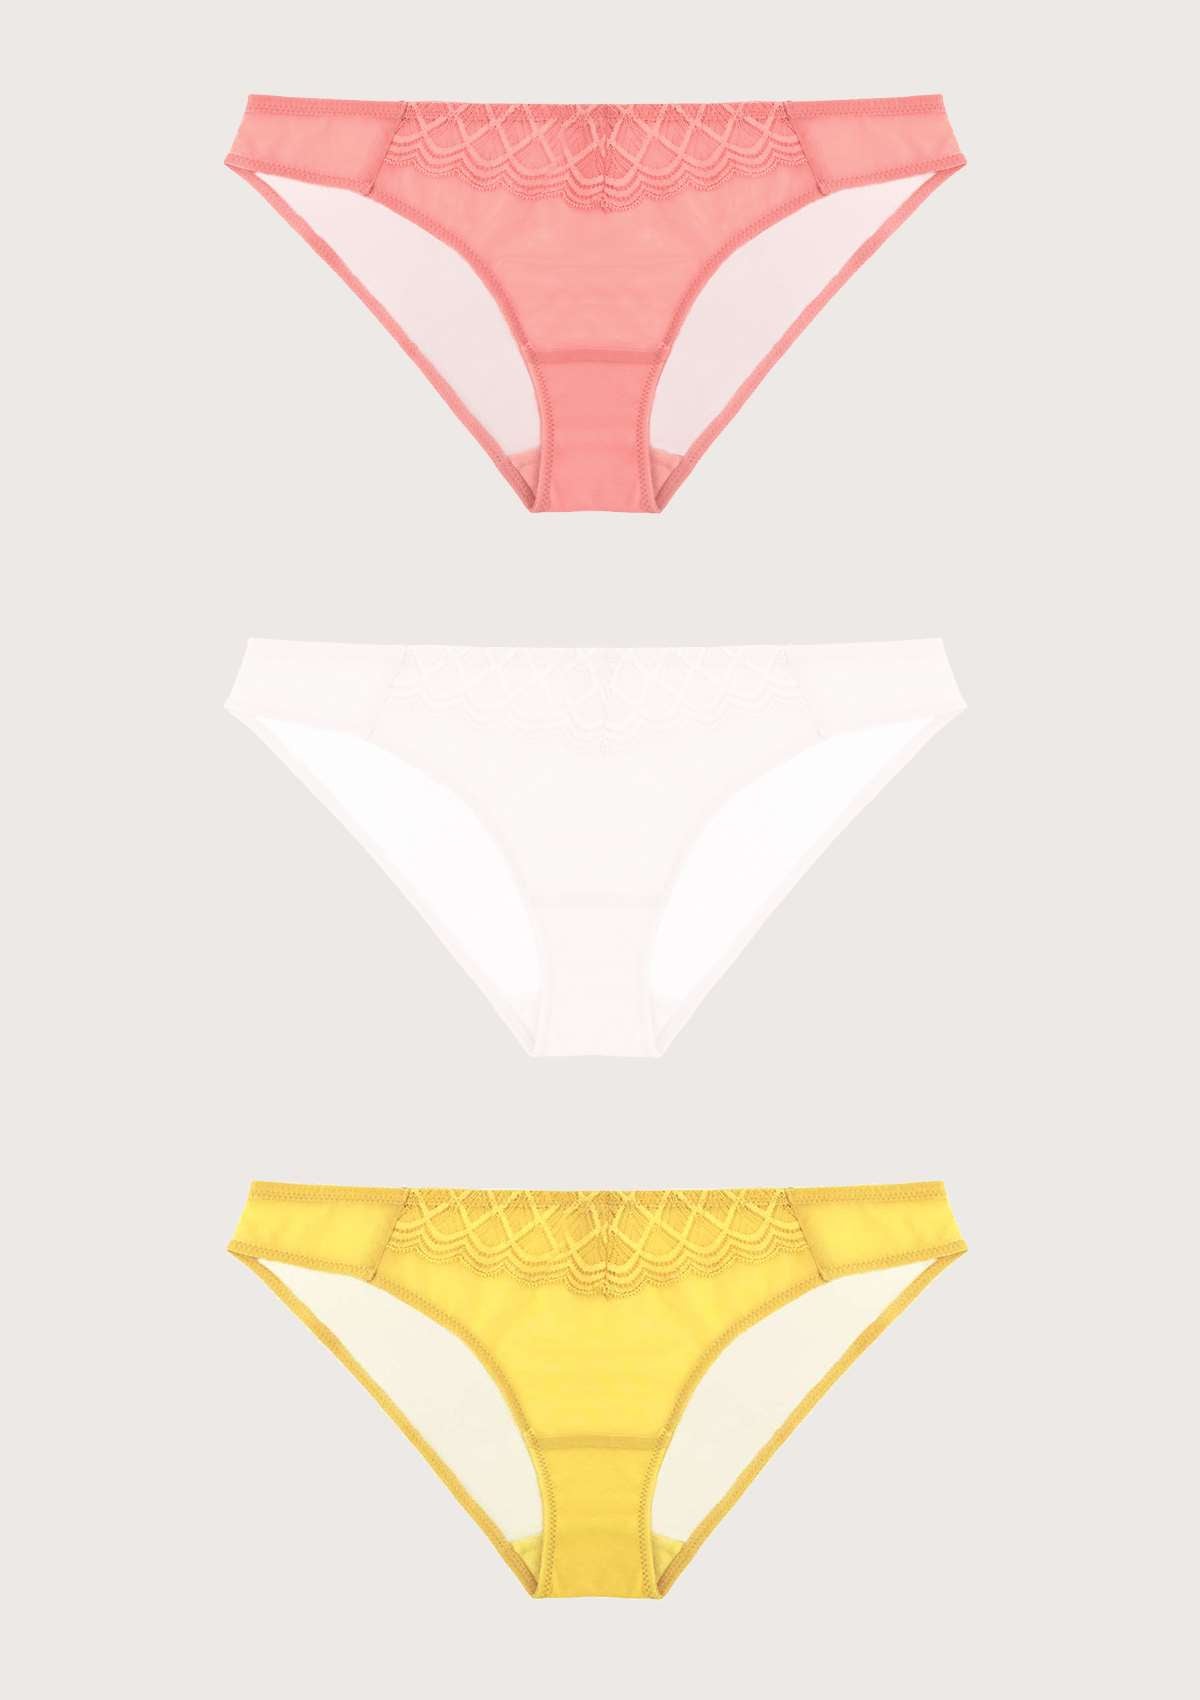 HSIA Plaid Lace Bikini Panties 3 Pack - S / Black+Yellow+Pink